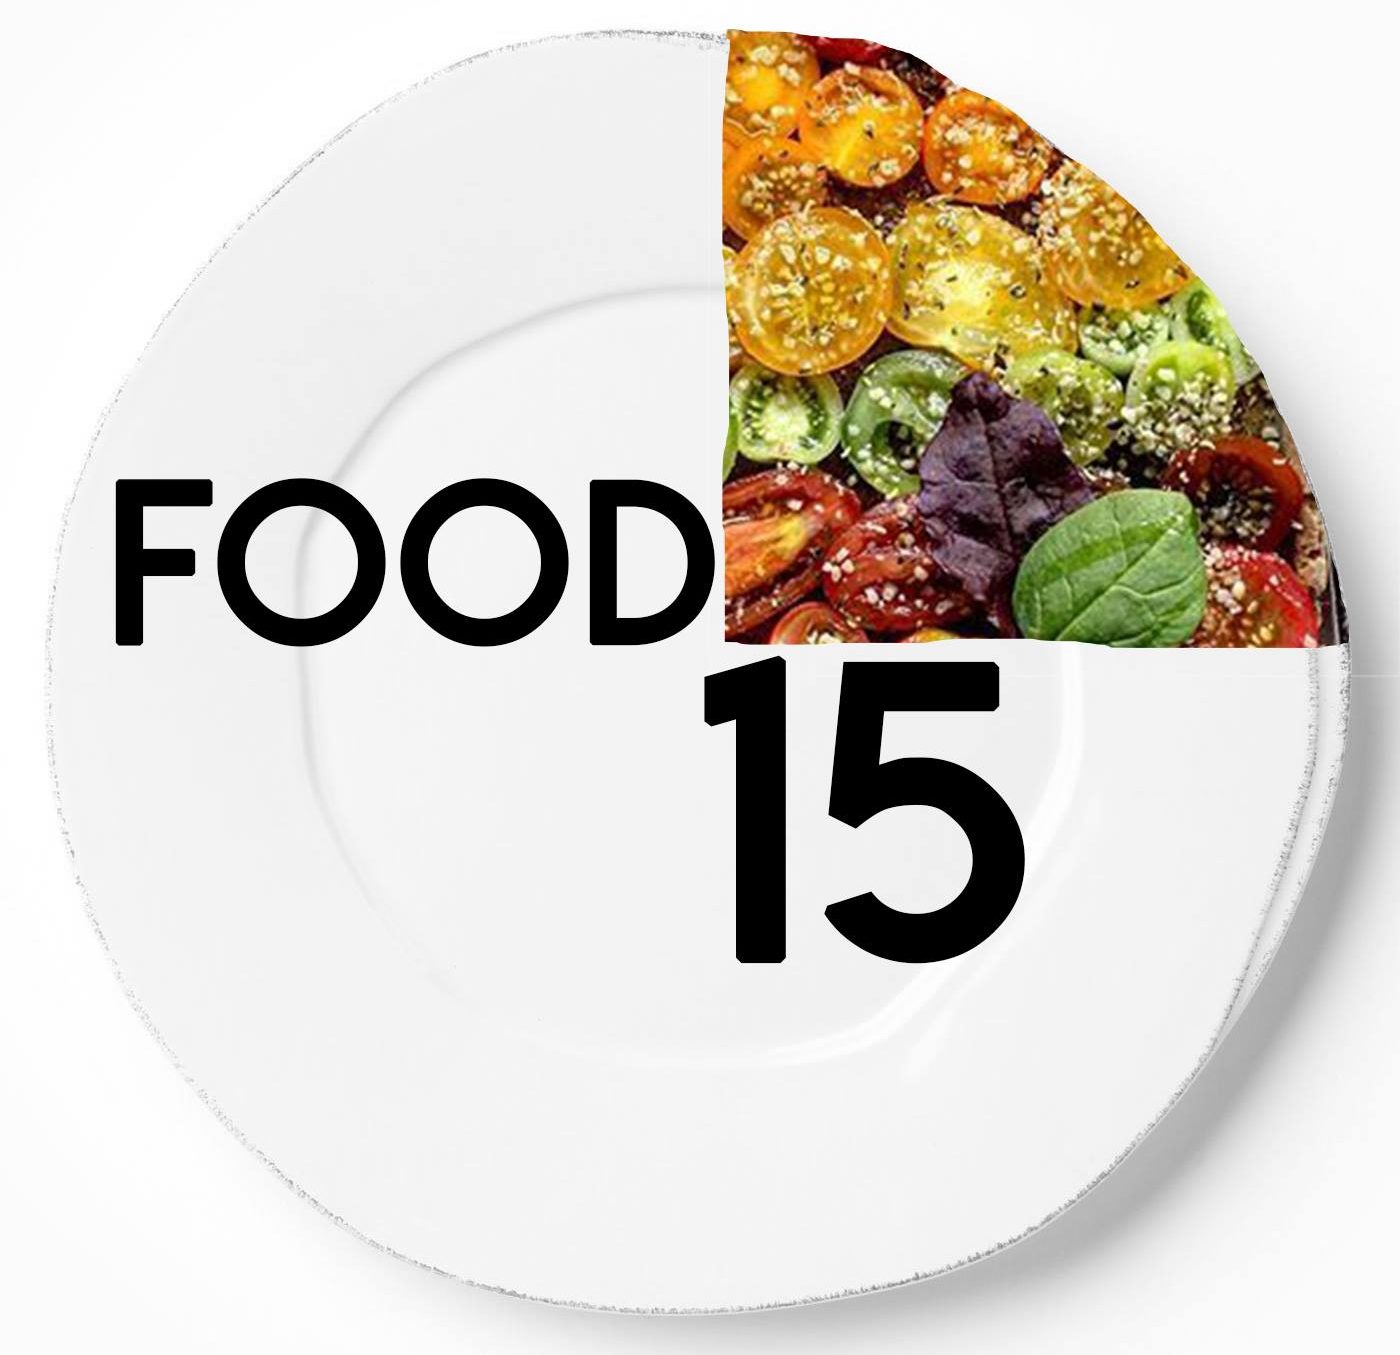 Food 15